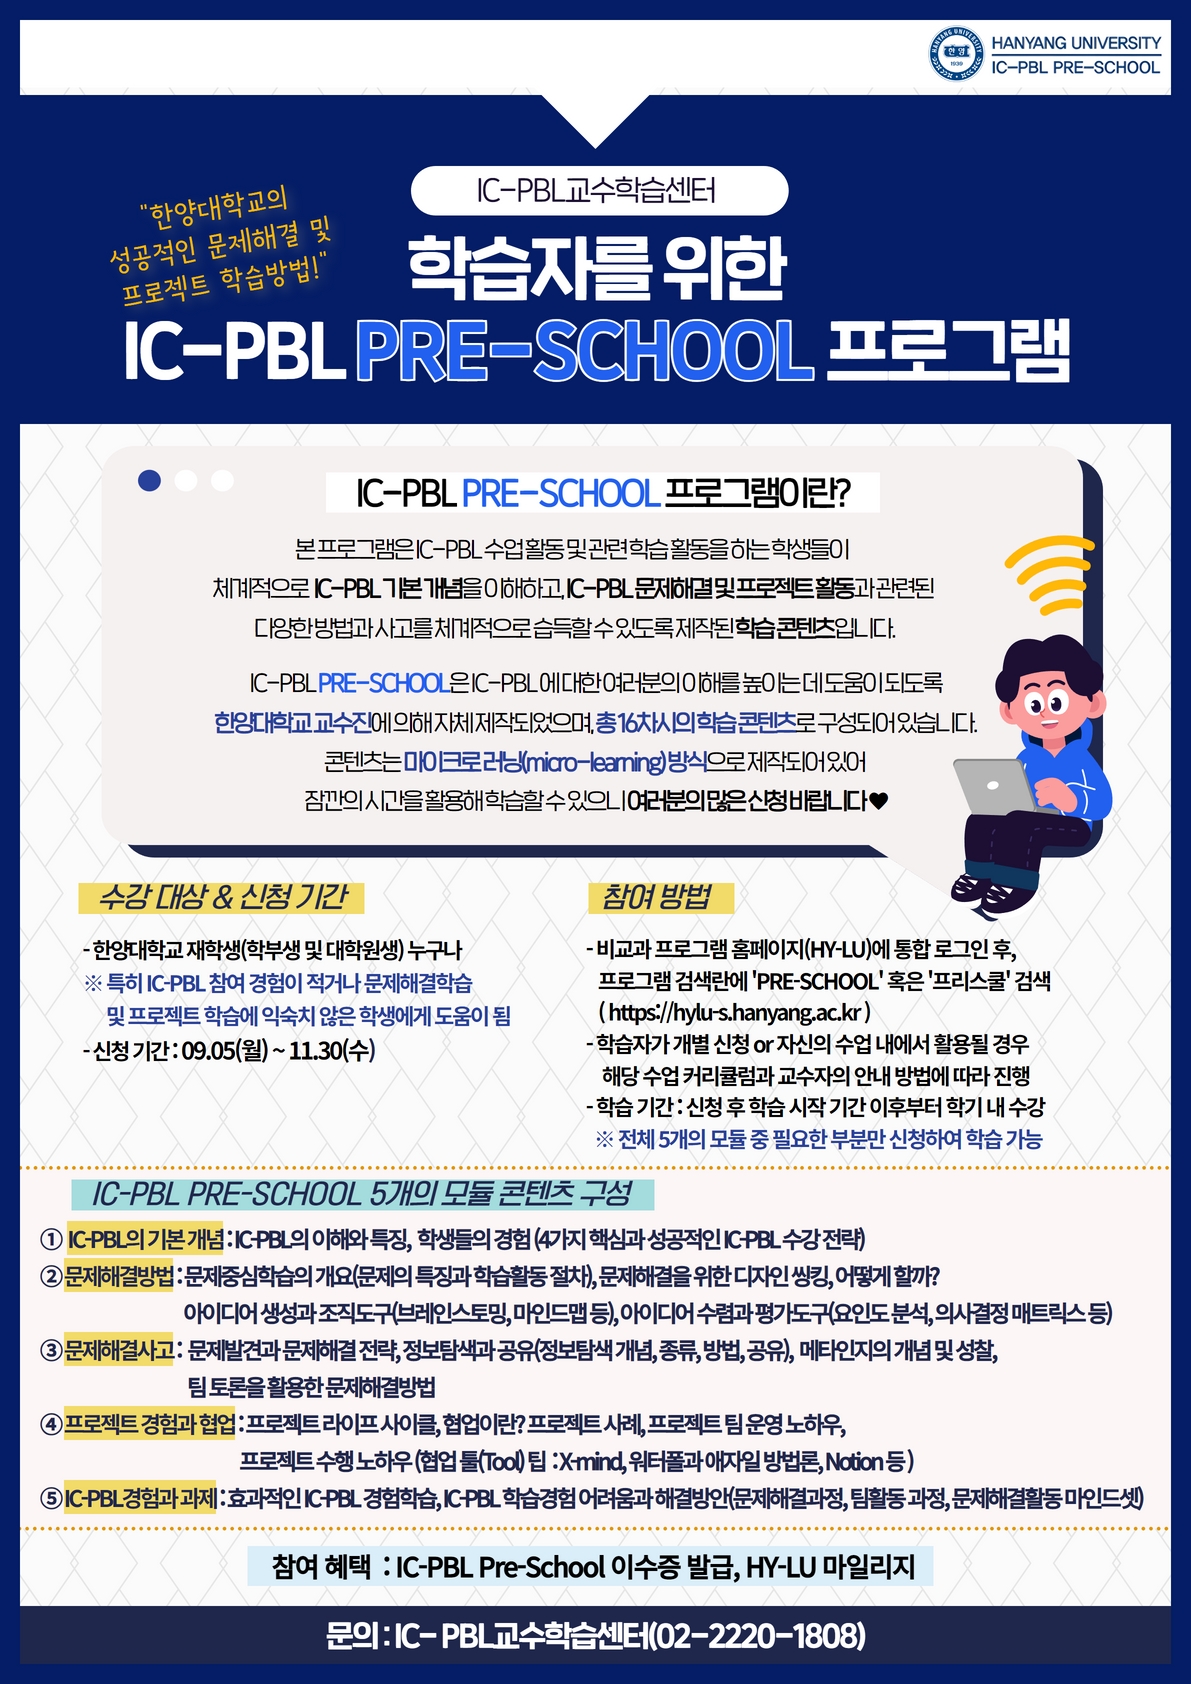 3. 2022-2학기 IC-PBL PRE-SCHOOL 포스터(학생 신청 안내)